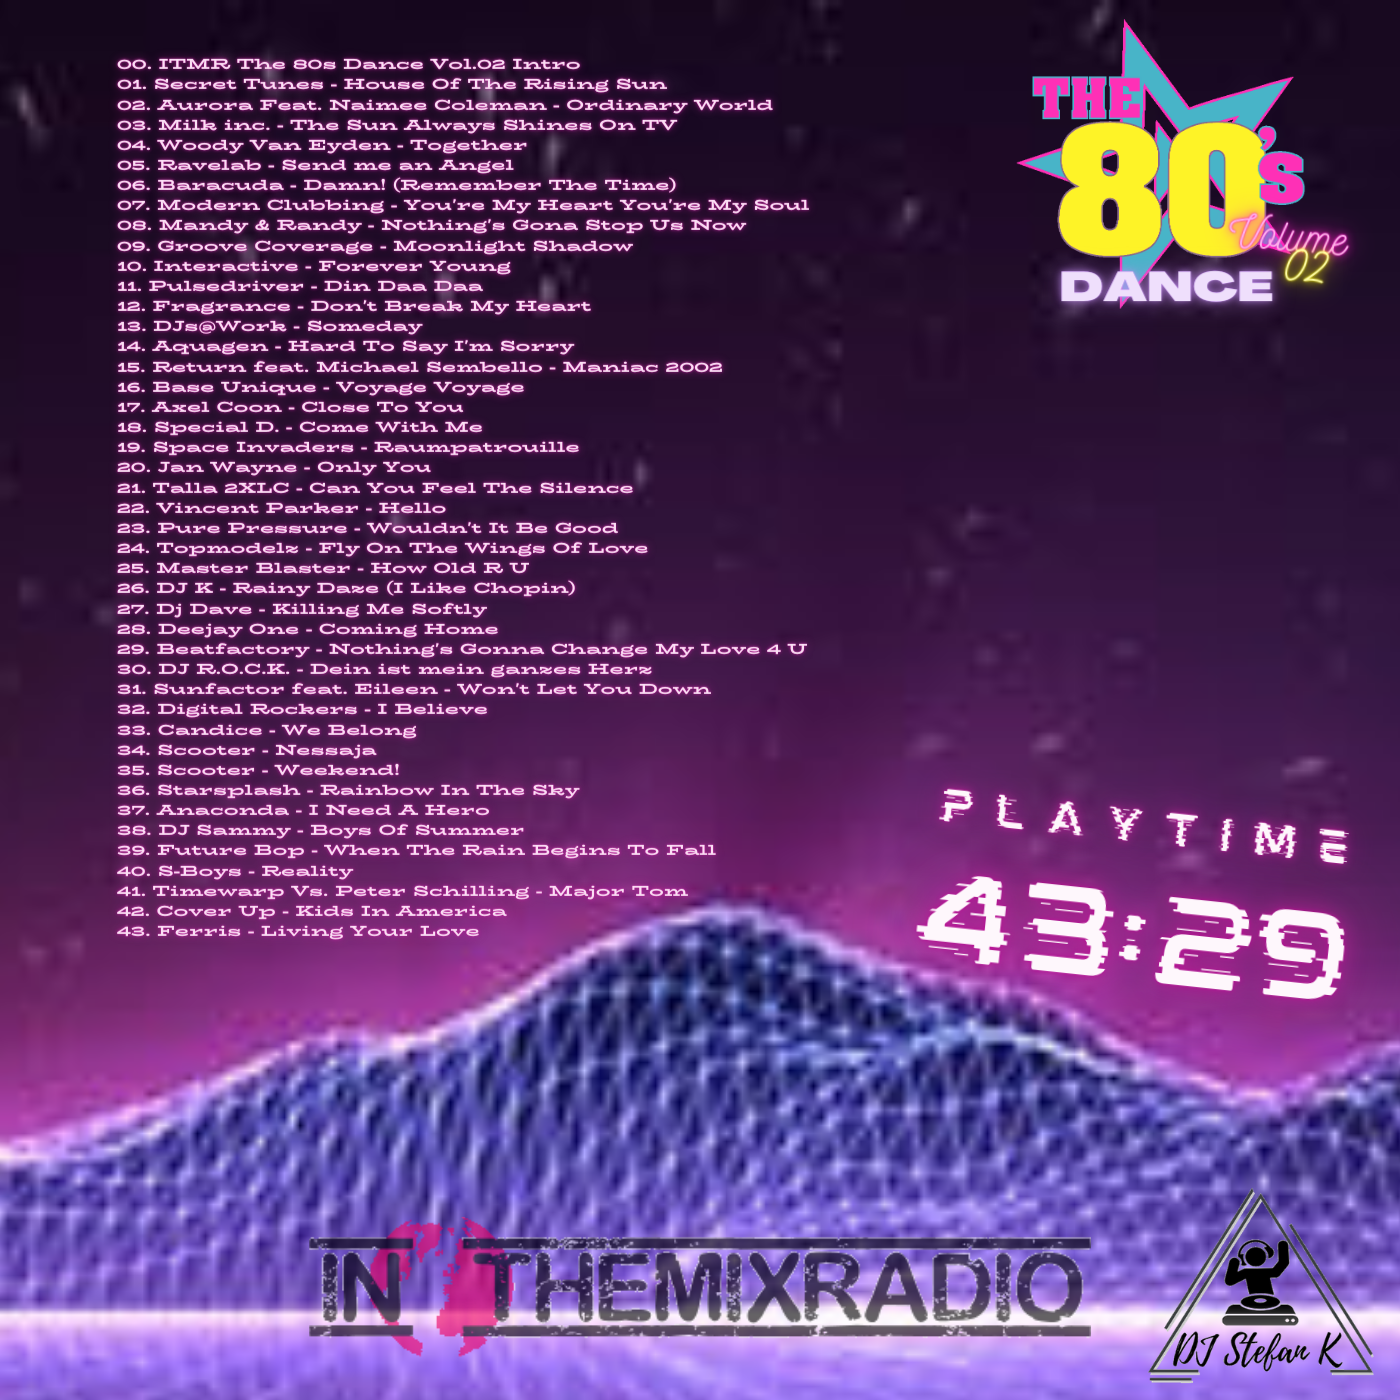  DJ Stefan K - ITMR The 80s Dance Vol.2  3i6joc